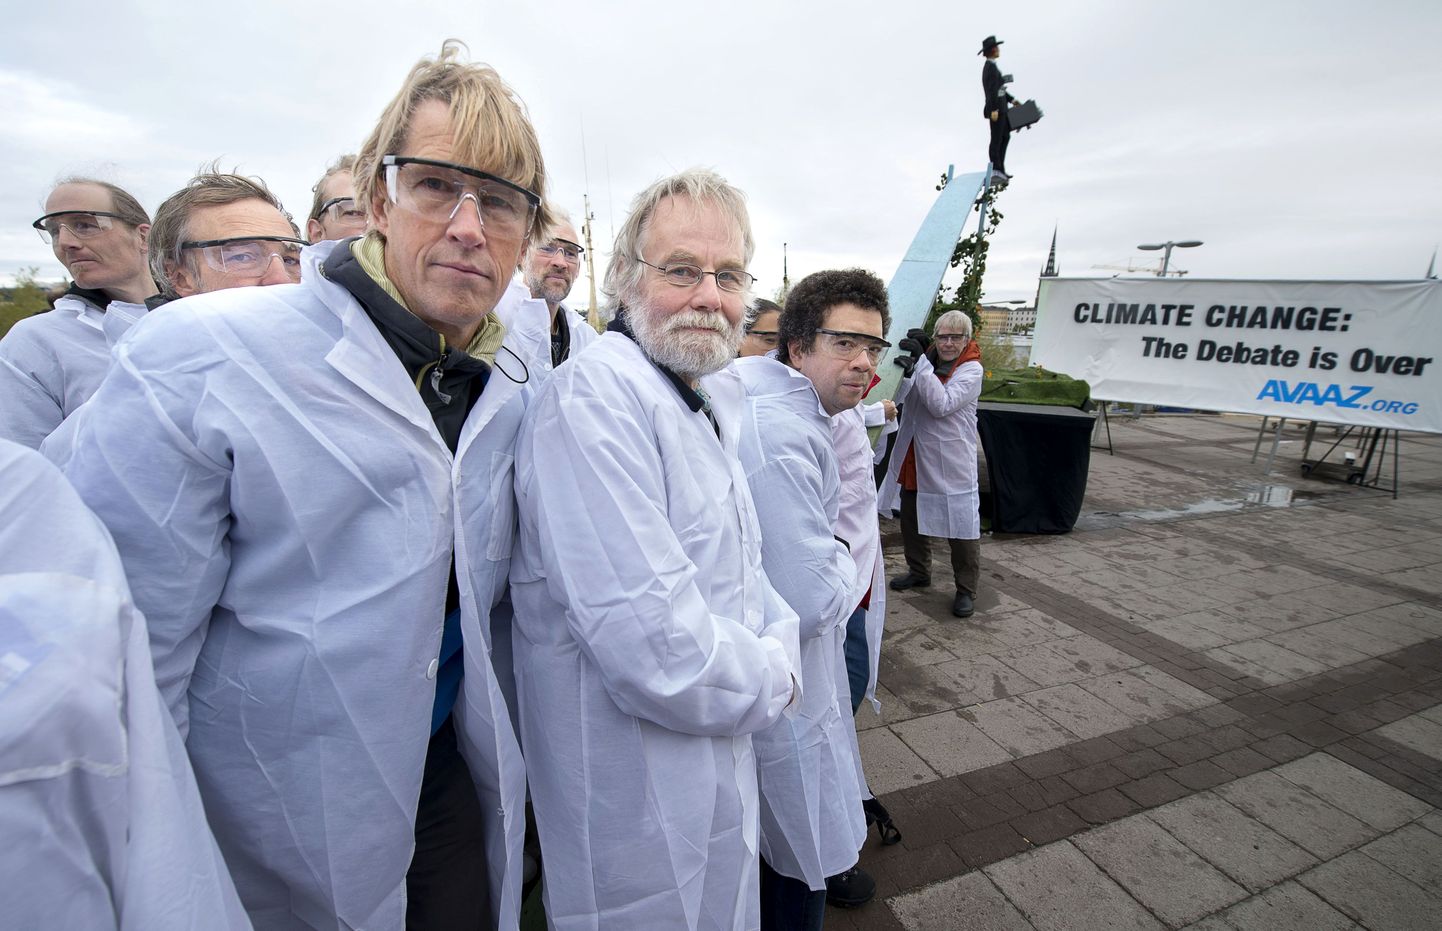 Kliimasoojanemise tunnistamise ja sellega võitlemise eest seisva organisatsiooni Avaaz liikmed kogunesid Stockholmi ajaloolise raporti vastuvõtmist tähistama.